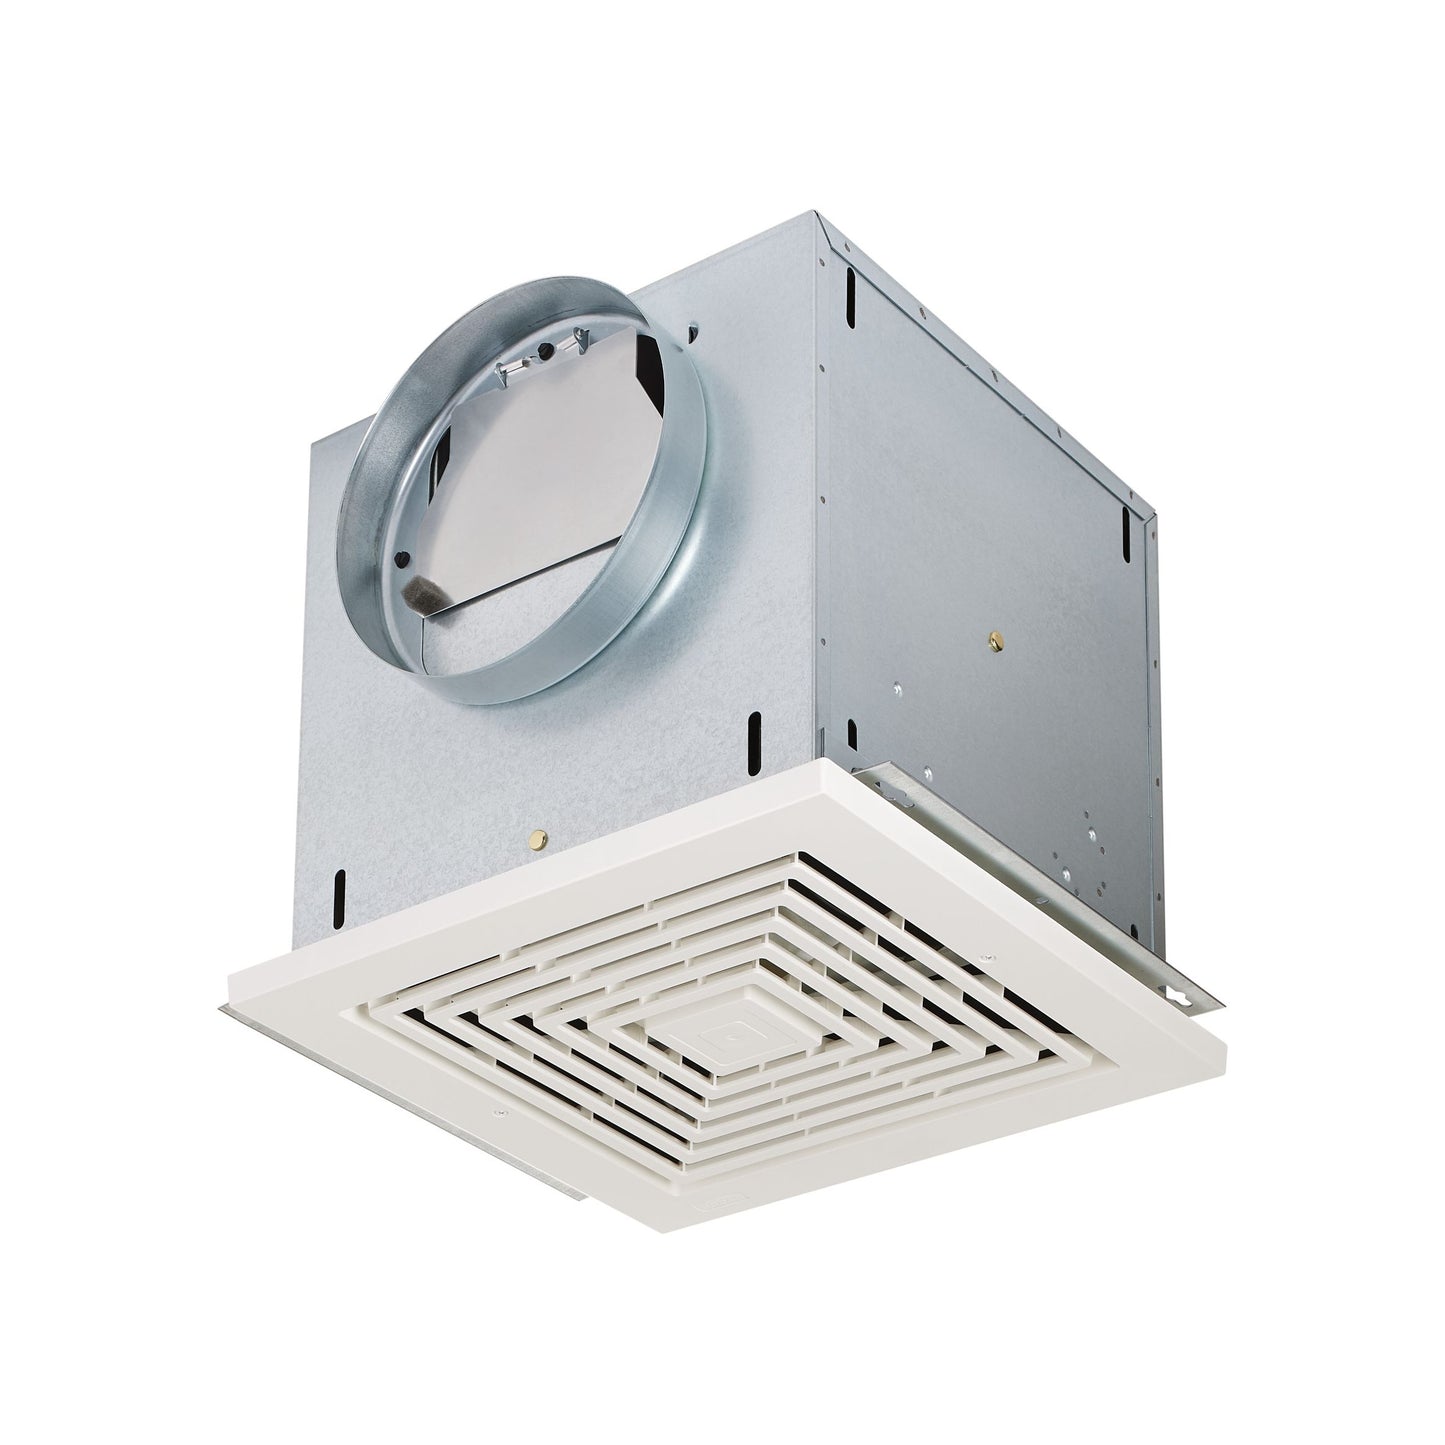 L300E - High Capacity Light Commercial Ceiling Mount Ventilation Fan - 2.5 Sones - 310 CFM